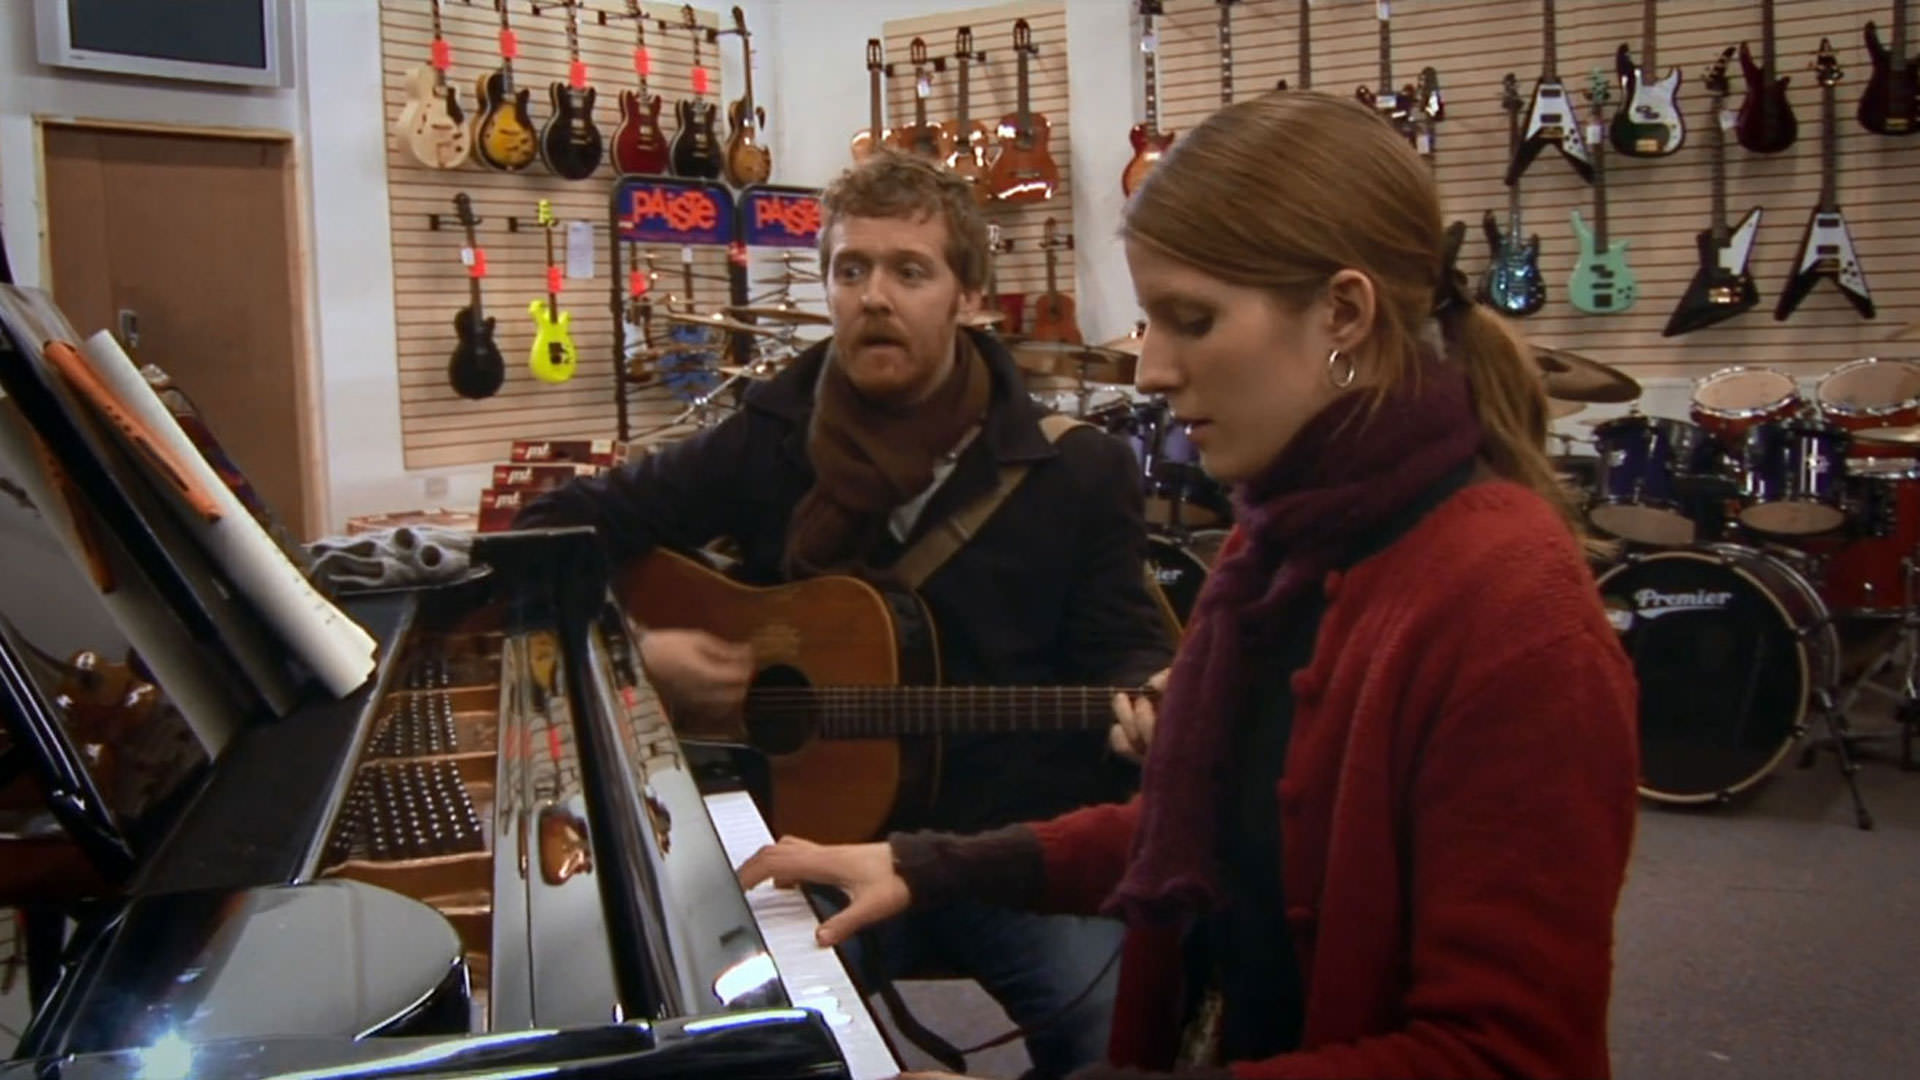 گلن هنسارد در حال نواختن گیتار در کنار مارکتا ایرگلووا که پیانو می‌نوازد داخل یک فروشگاه آلات موسیقی در نمایی از فیلم یک‌بار به کارگردانی جان کارنی